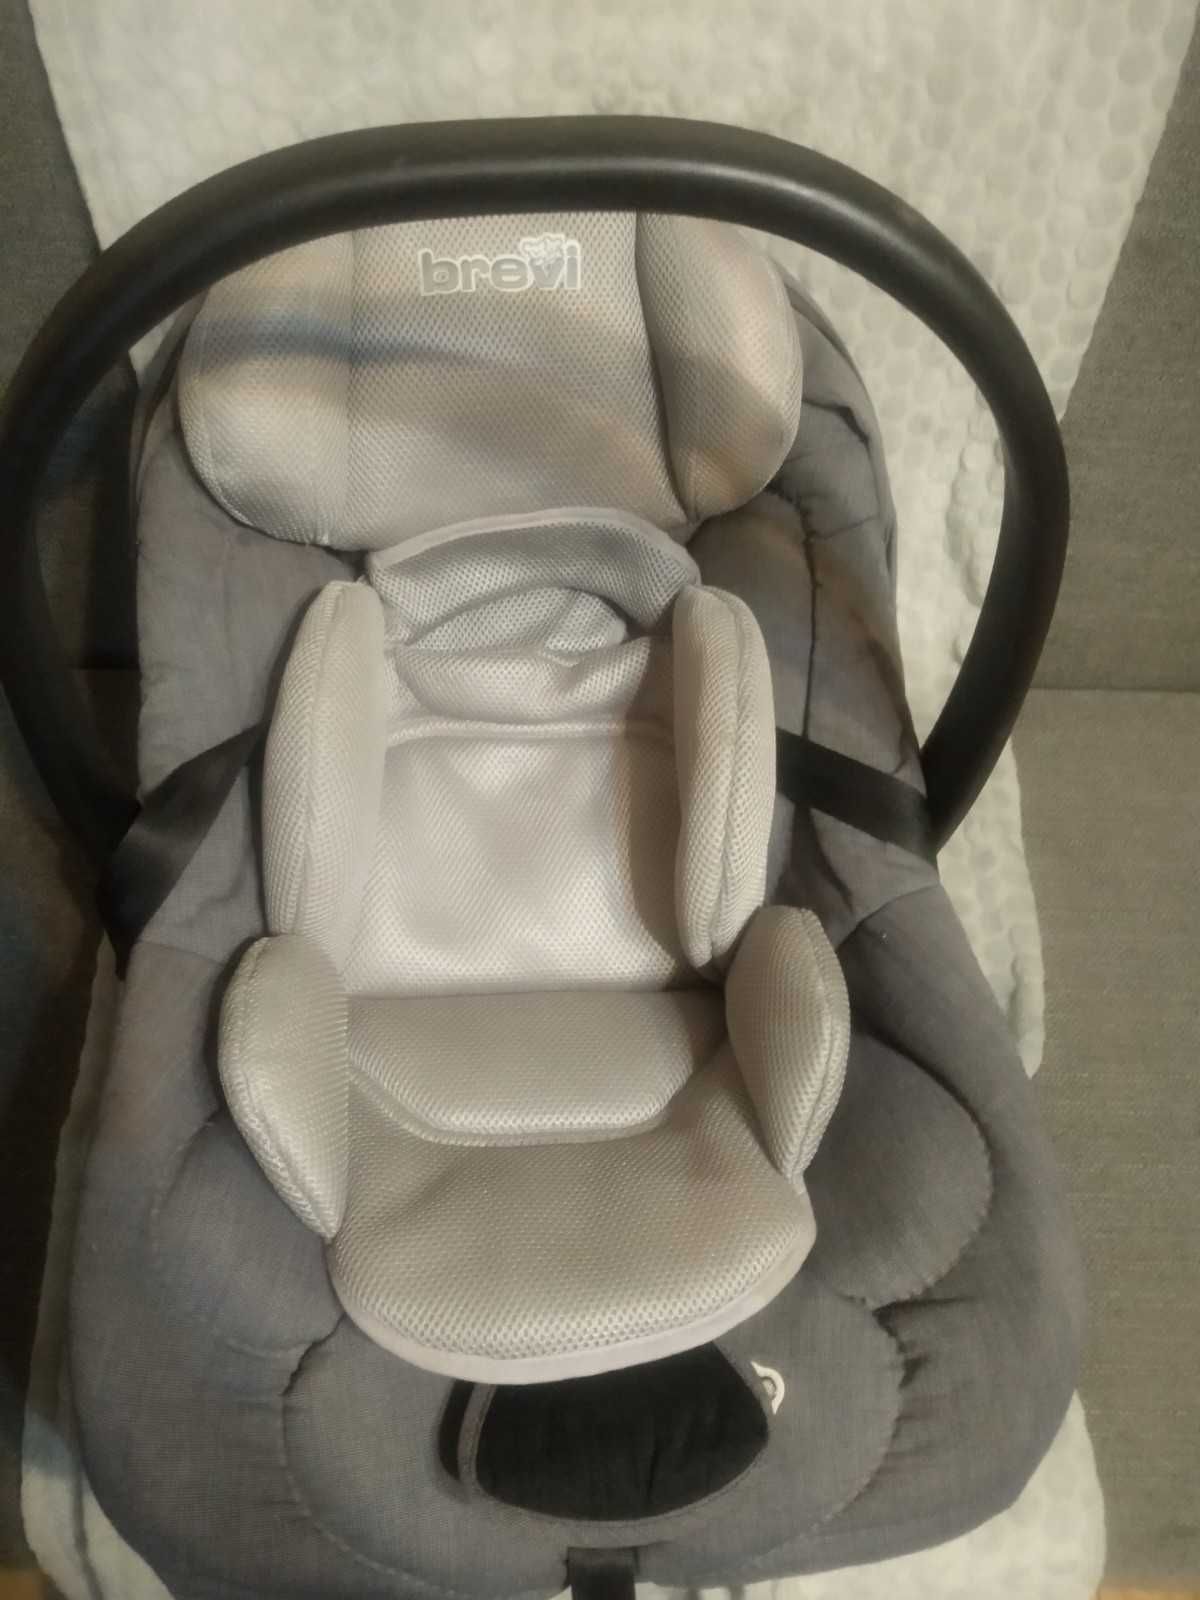 Cadeira Auto / Ovo da Bebe Confort 0 a 13 Kg + Redutor da Brevi